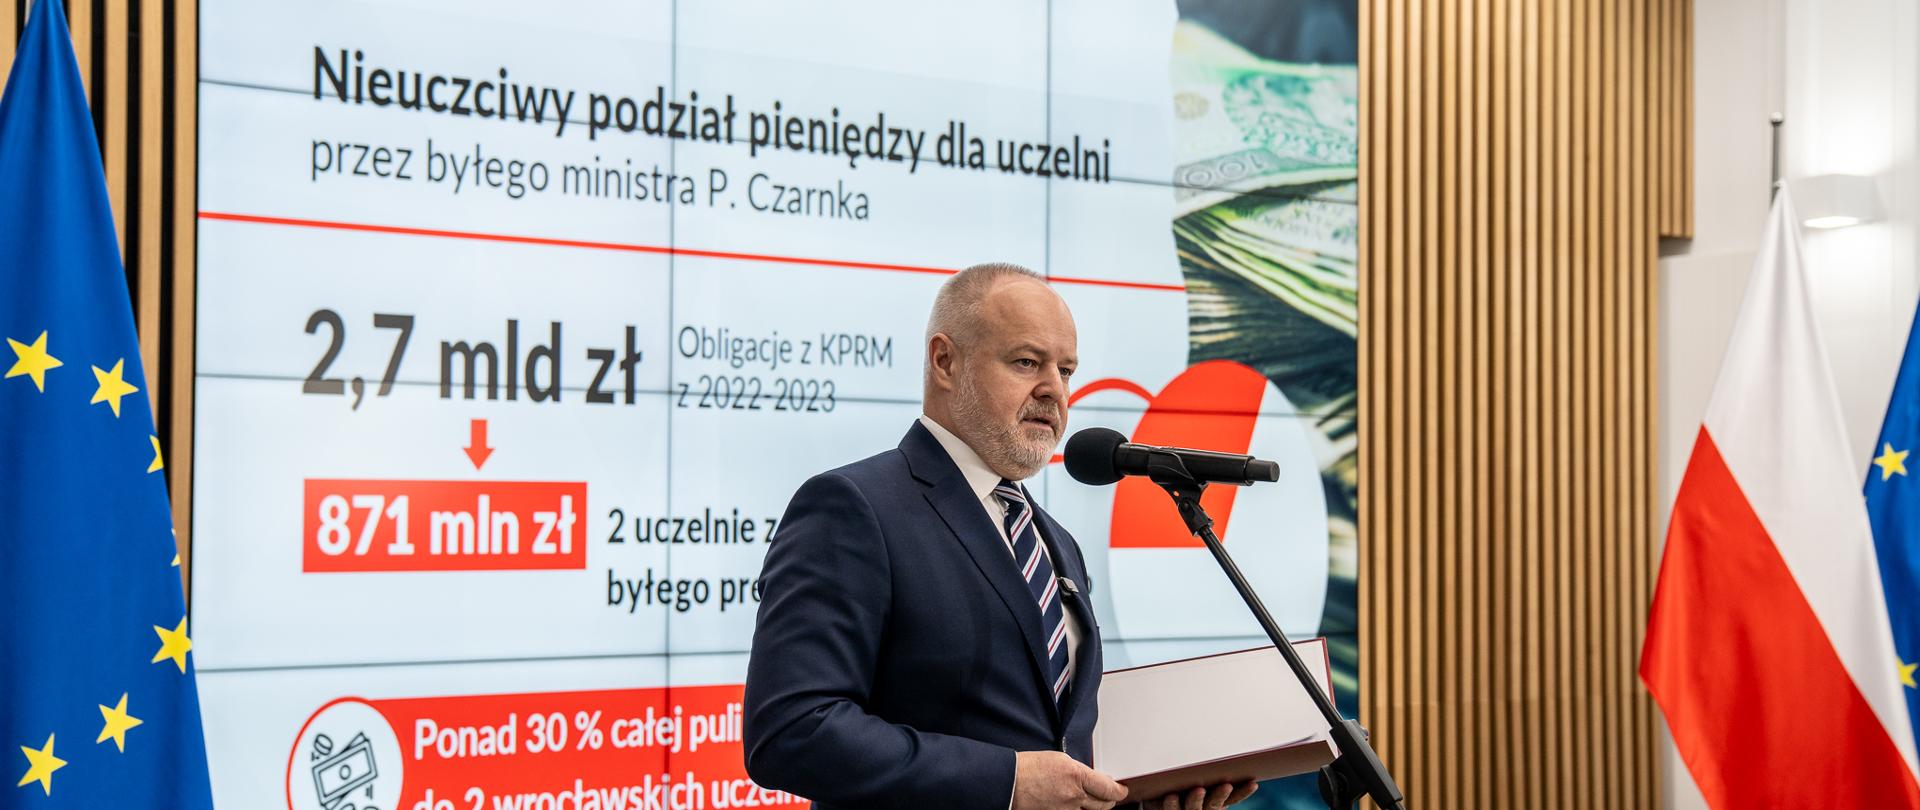 Wiceminister Gzik stoi na sali i mówi do mikrofonu na stojaku, za nim pod ścianą z drewnianych listewek flagi Polski i UE, na wbudowanym w ścianę ekranie napis Nieuczciwy podział pieniędzy dla uczelni.